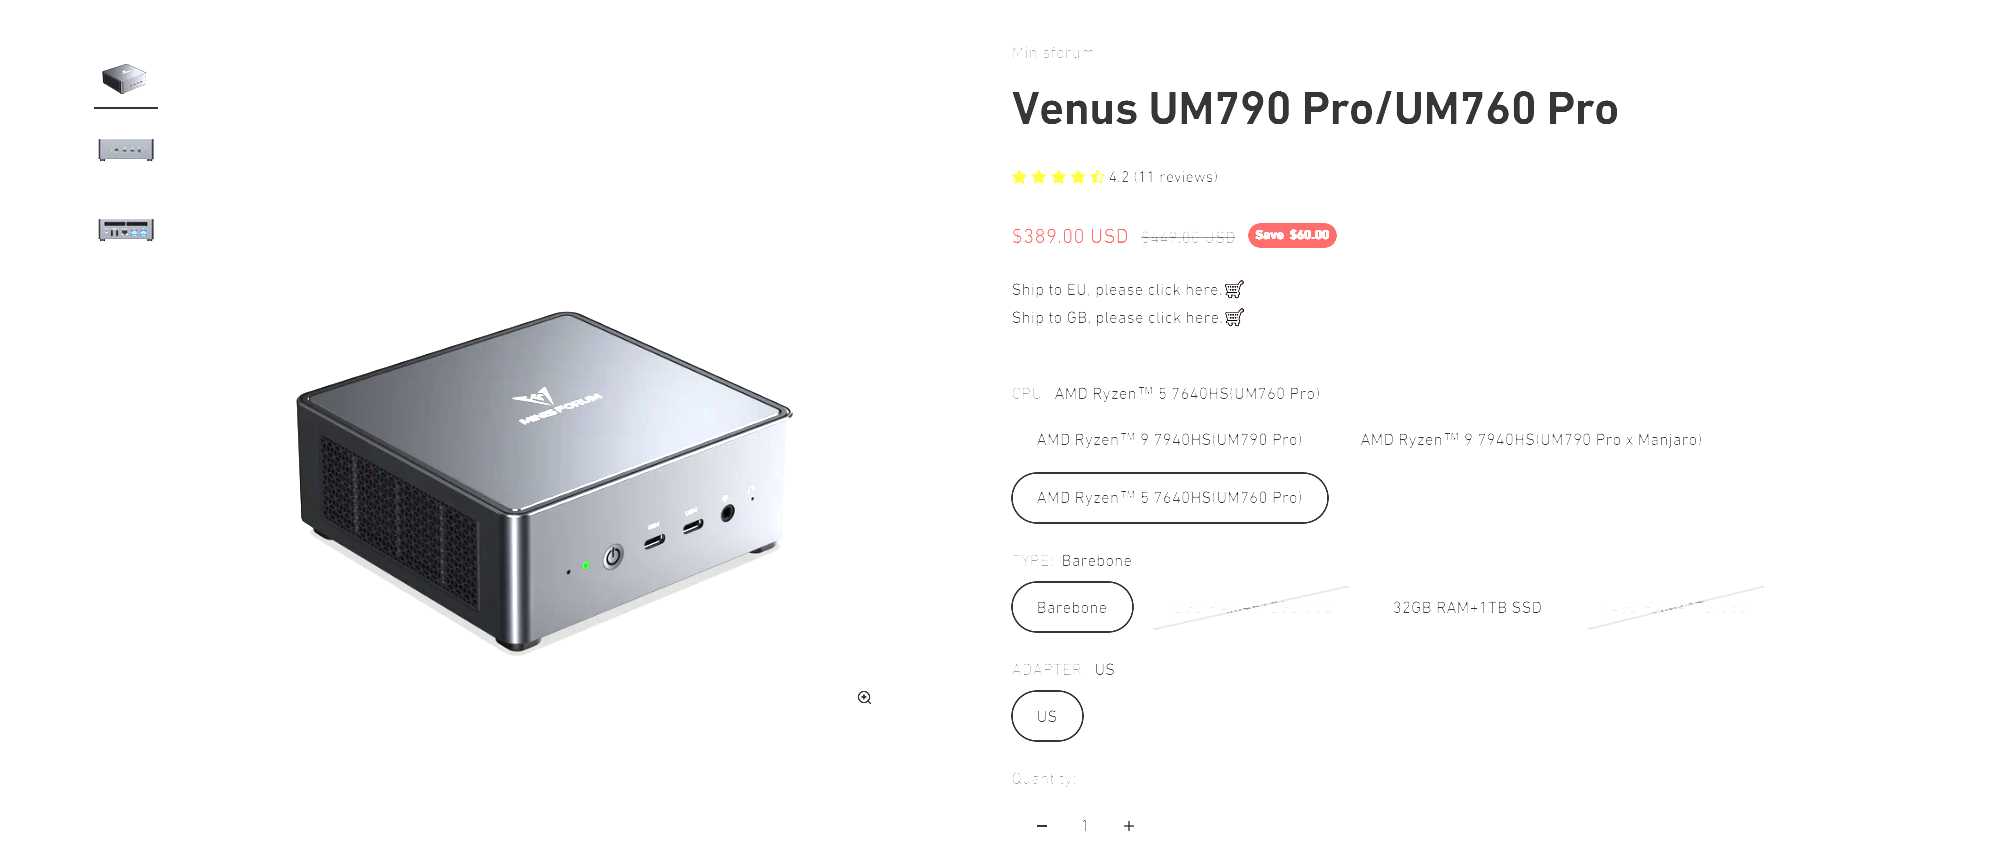 Venus UM790 Pro/UM760 Pro